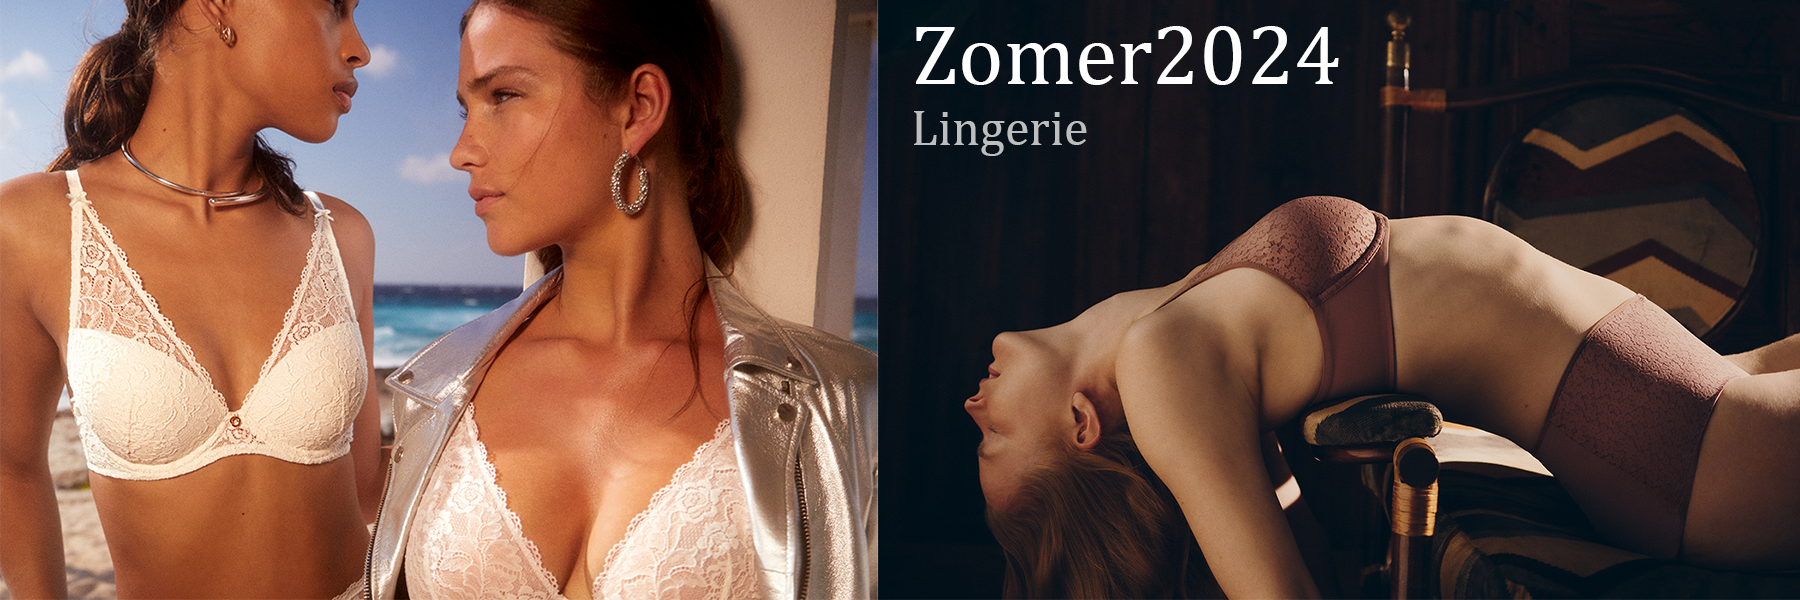 header_2024_lingerie